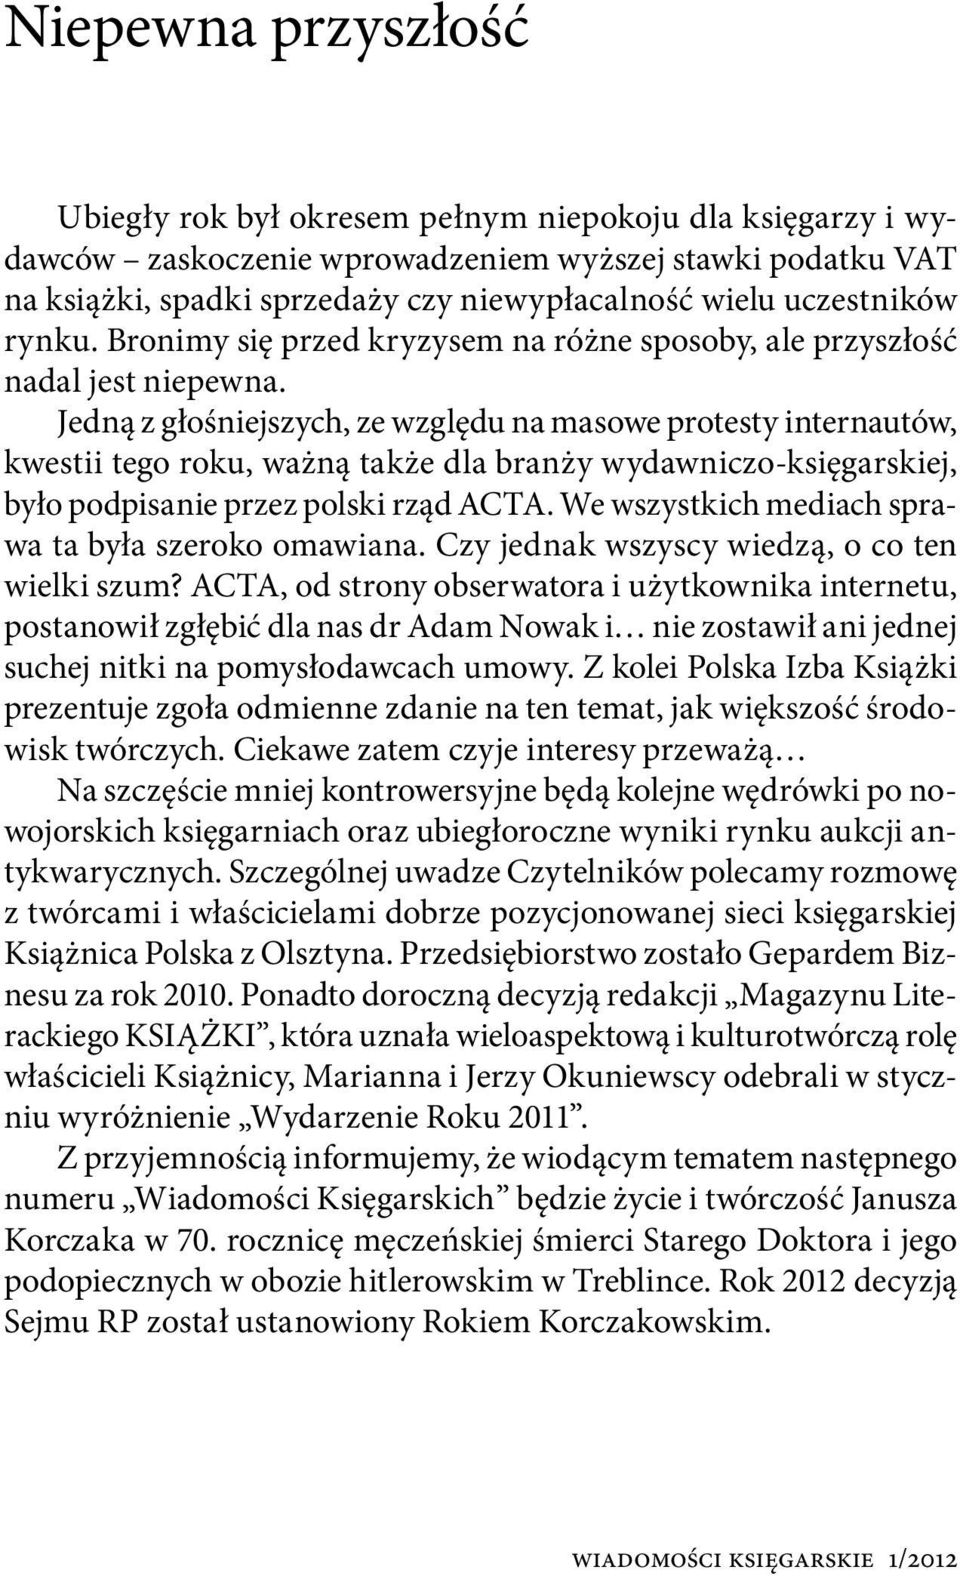 Jedną z głośniejszych, ze względu na masowe protesty internautów, kwestii tego roku, ważną także dla branży wydawniczo-księgarskiej, było podpisanie przez polski rząd ACTA.